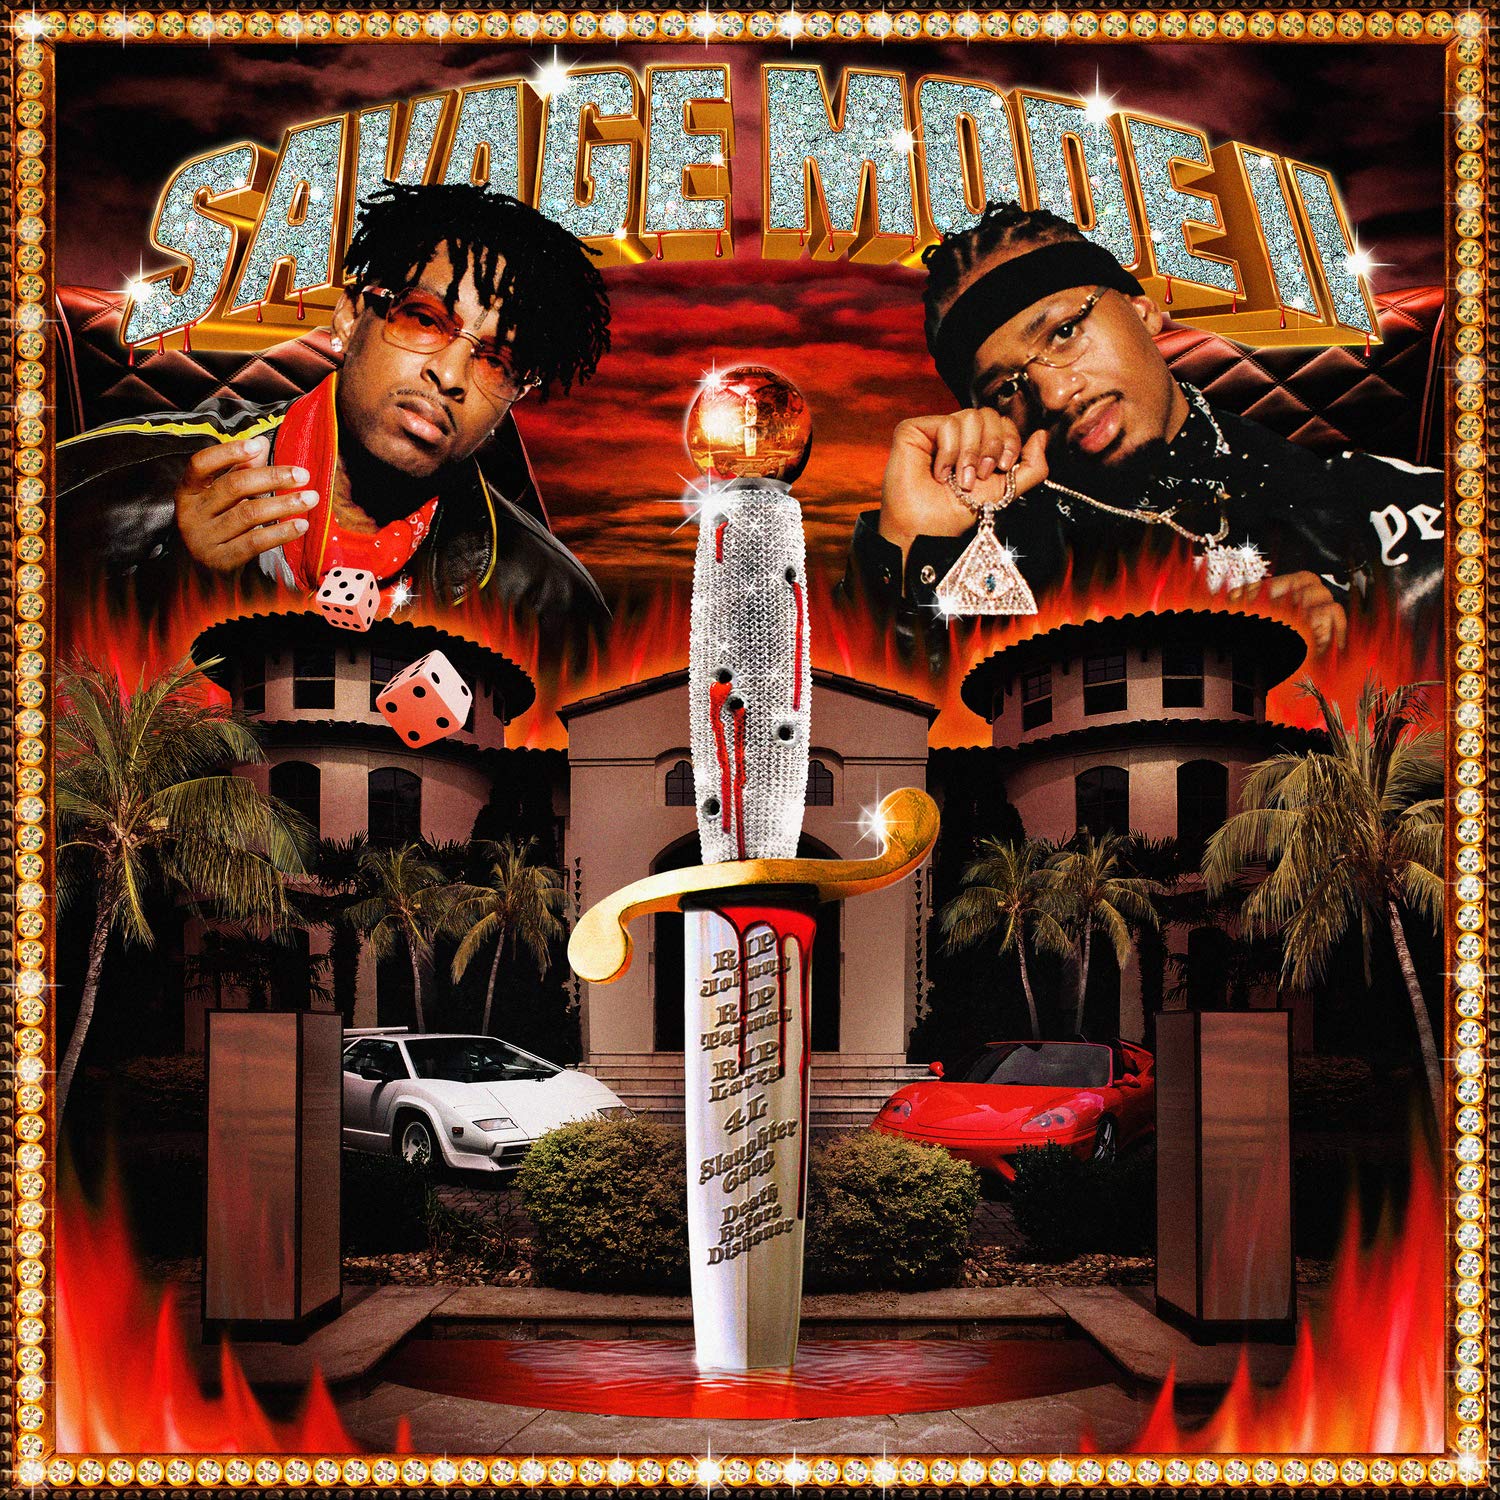 Album associé à la Mexicake par Tempest Brewing. 21 Savage & Metro Boomin - Savage Mode II